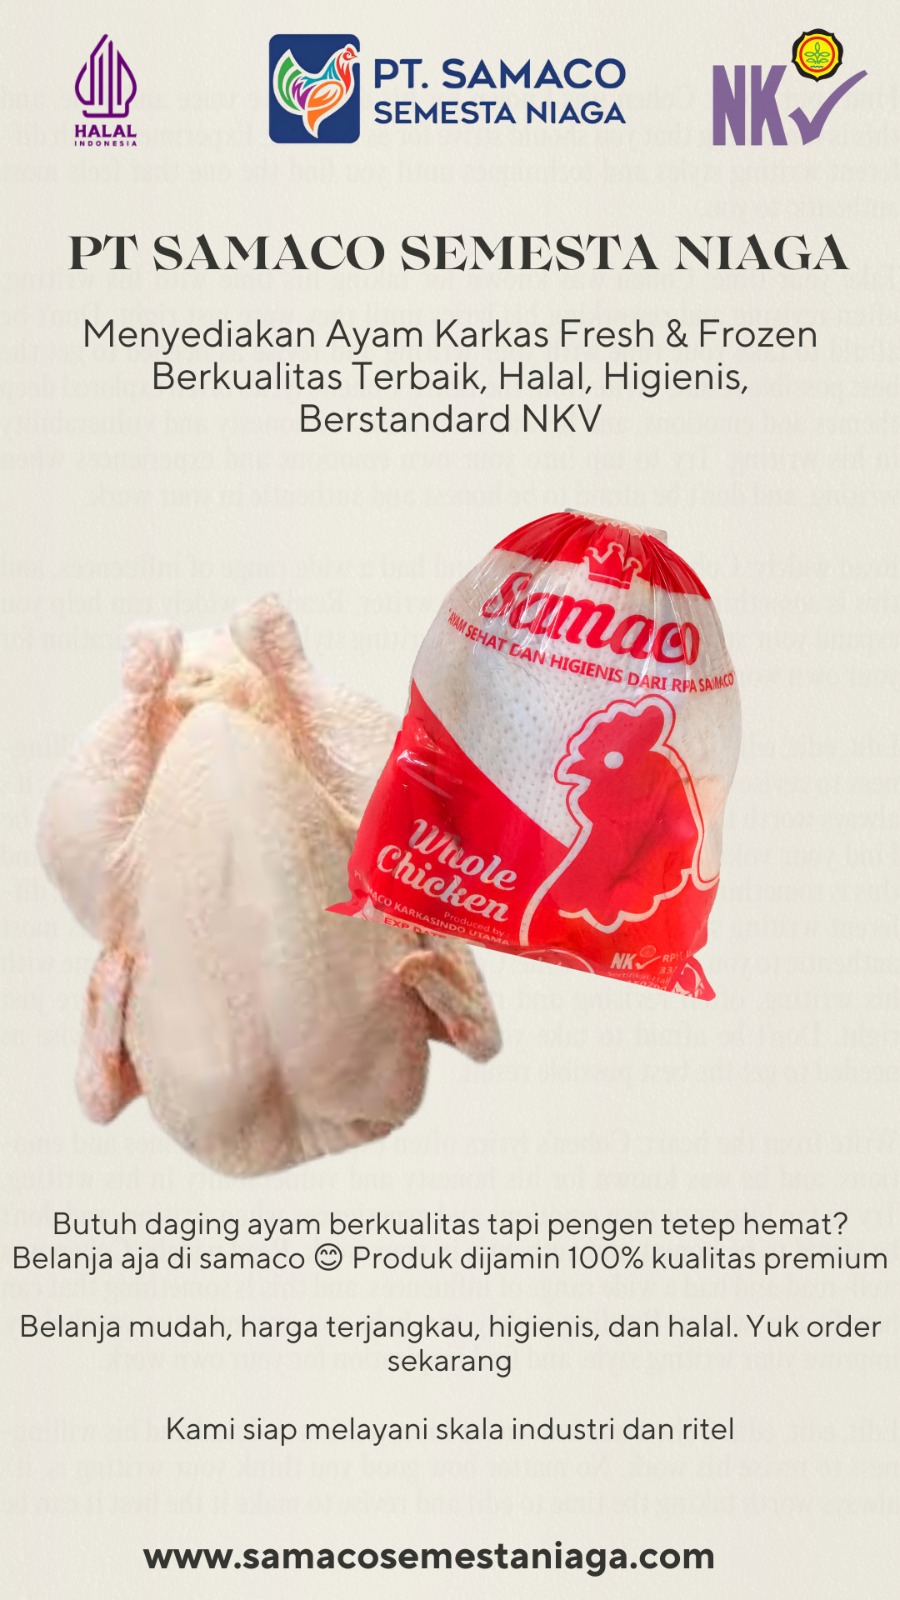 Pusat Ayam Karkas Frozen dan Fresh untuk Area Pati, Kudus, Semarang, Rembang, Jepara, Blora, Demak, Grobogan dan Solo